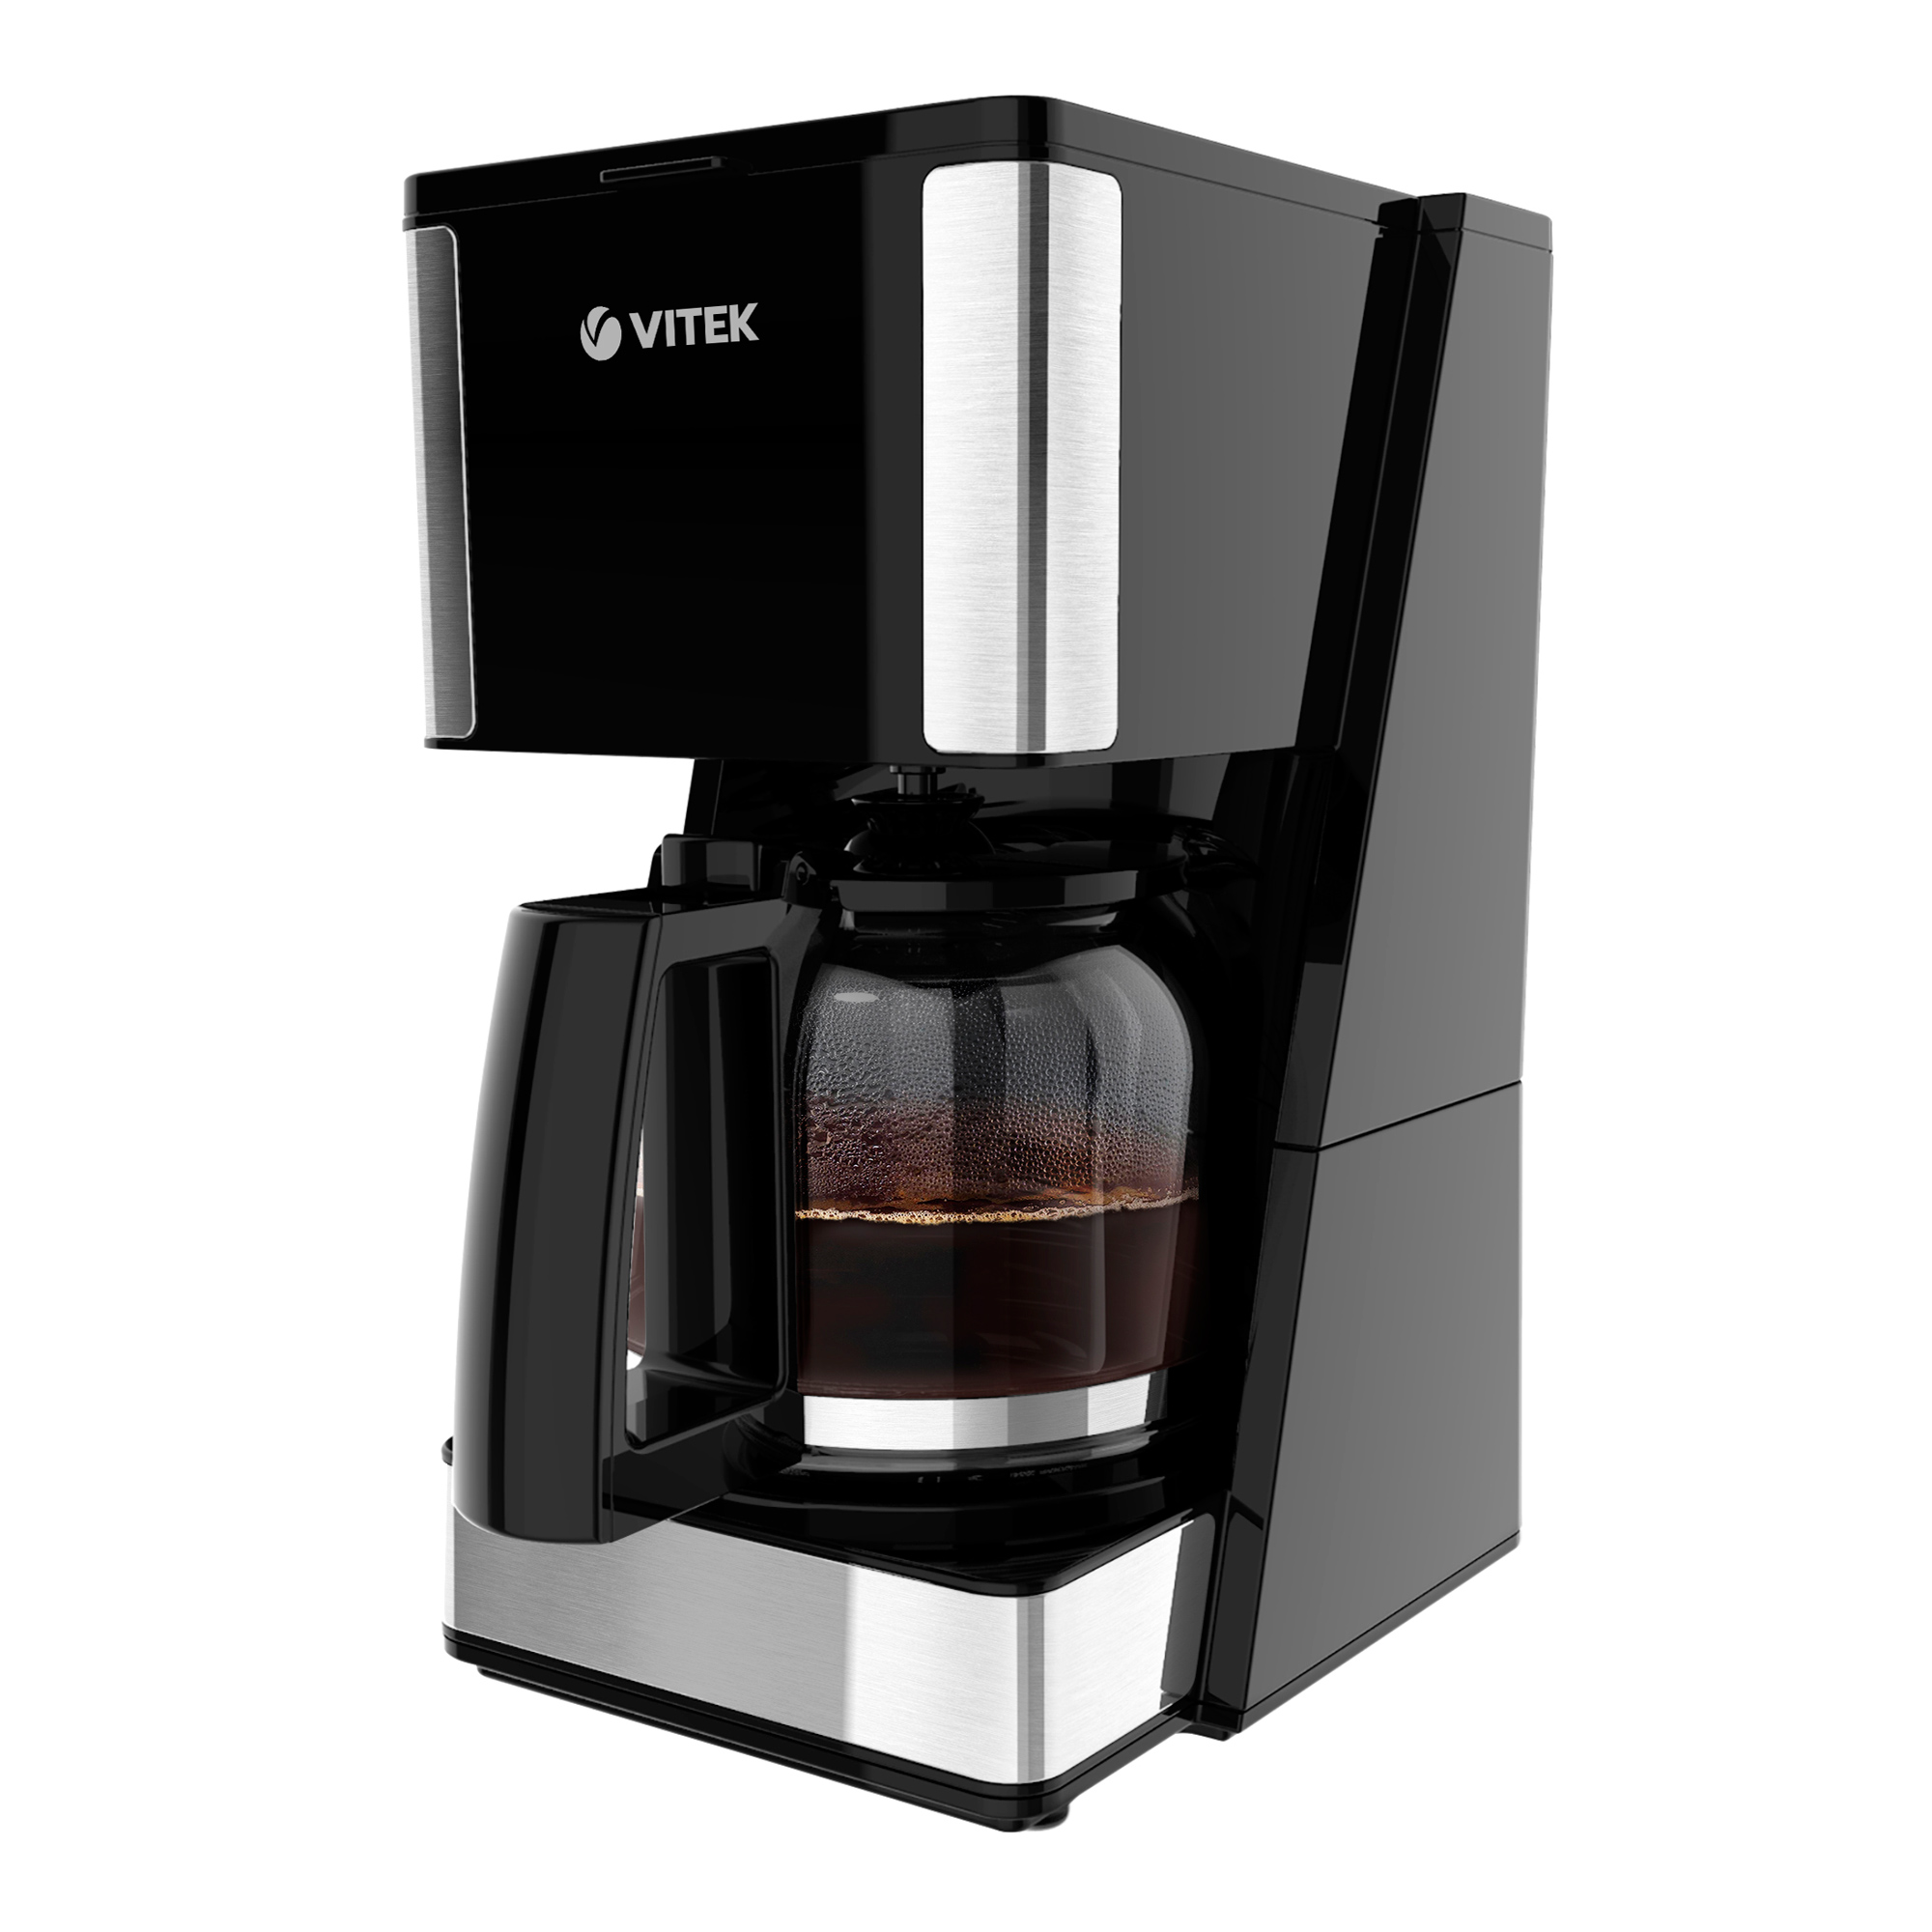 Кофеварка капельного типа VITEK VT-8384 серый, черный рожковая кофеварка delonghi ec 885 gy серый серебристый